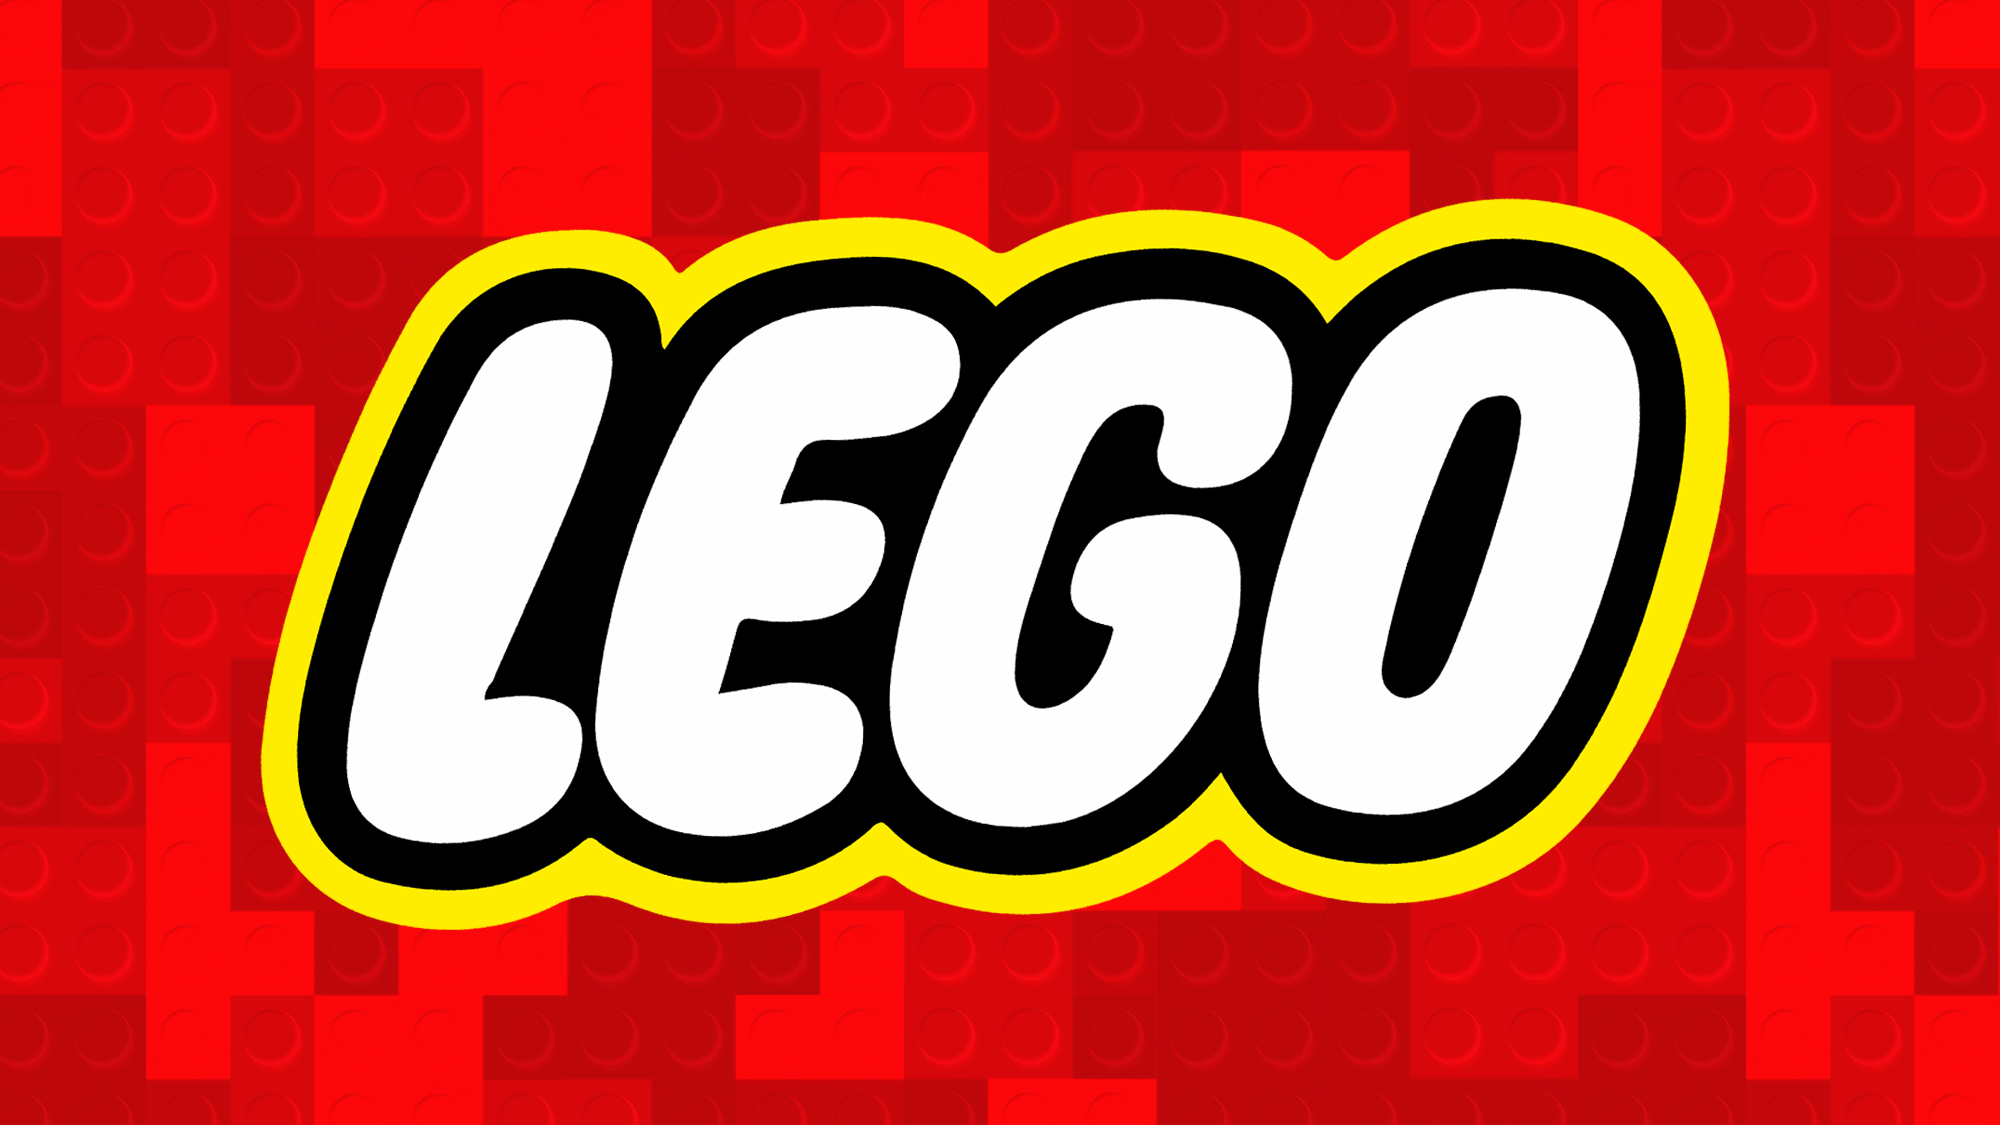 LEGO met le paquet pour cette licence légendaire et veut vous faire craquer